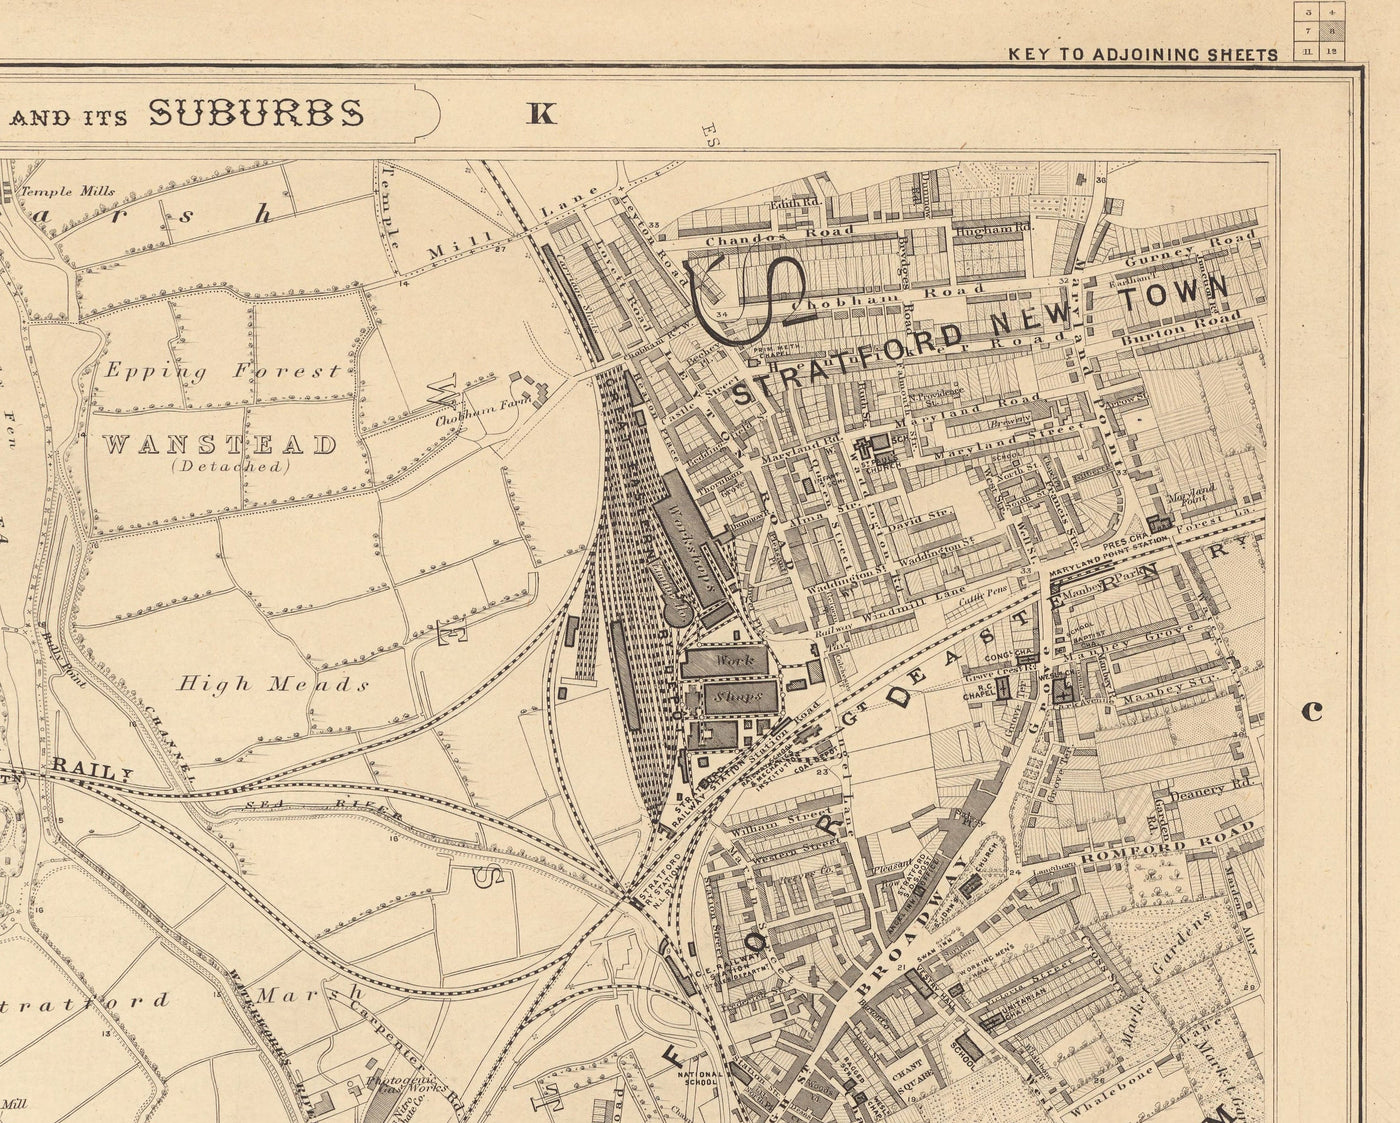 Alte Karte von East London 1862 von Edward Stanford - Victoria Park, Hackney, Bogen, Stratford, Turmhamlets - E9, E20, E3, E15